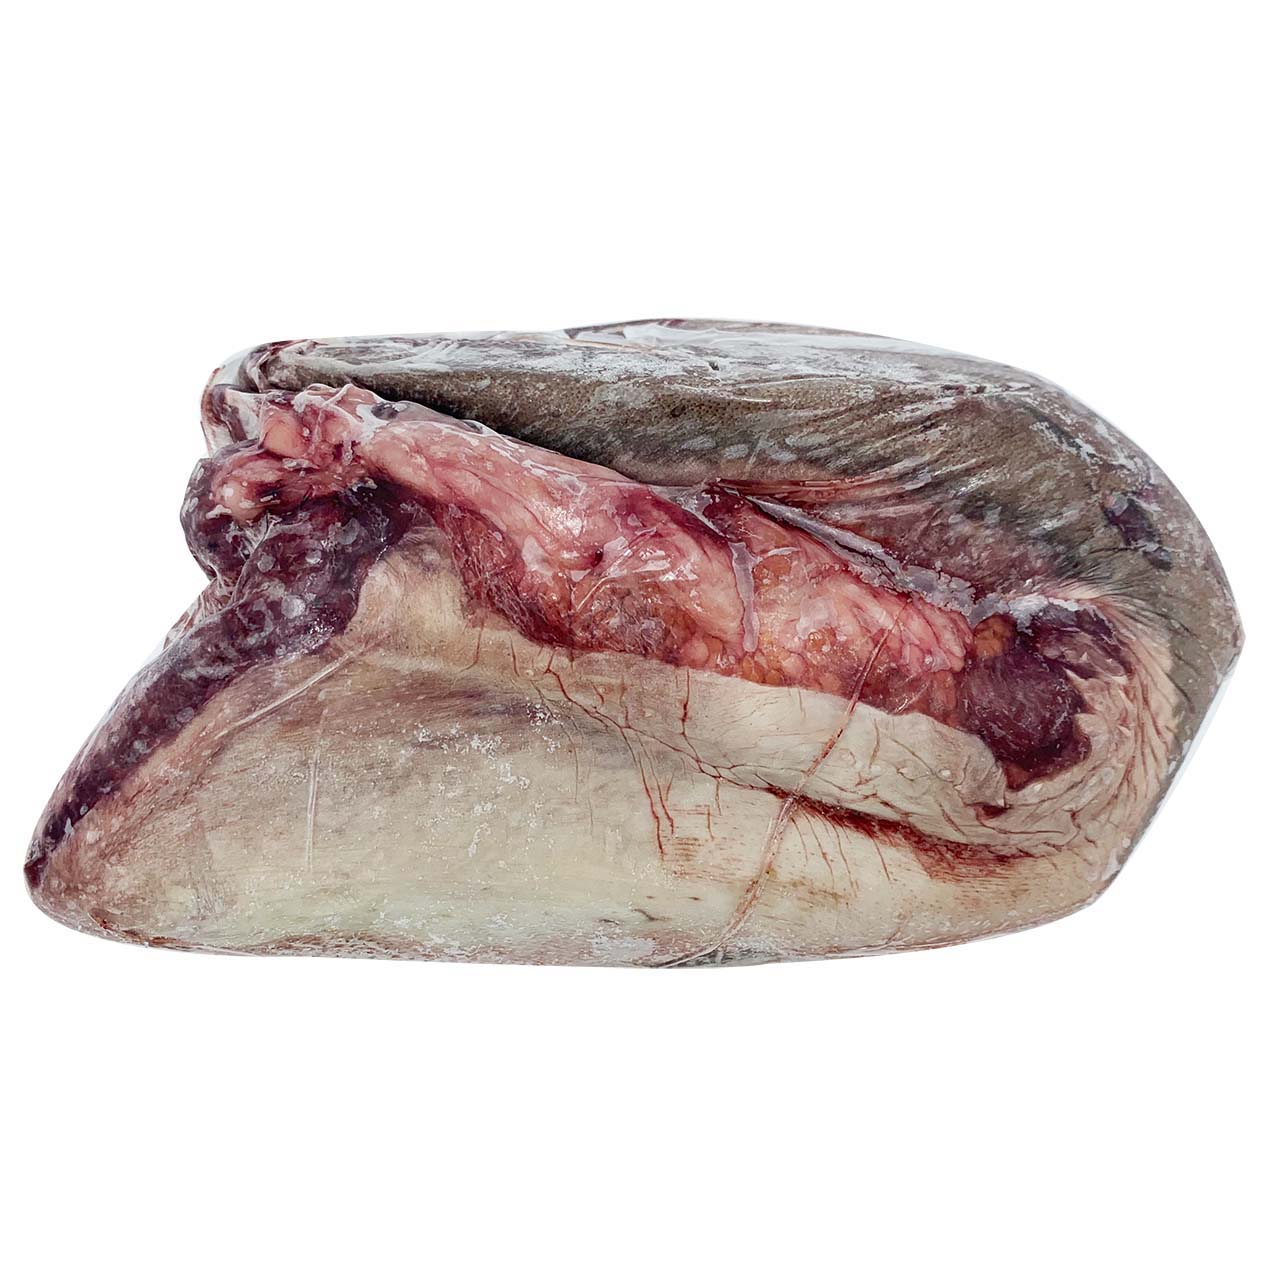 Beef Tongue - Organic